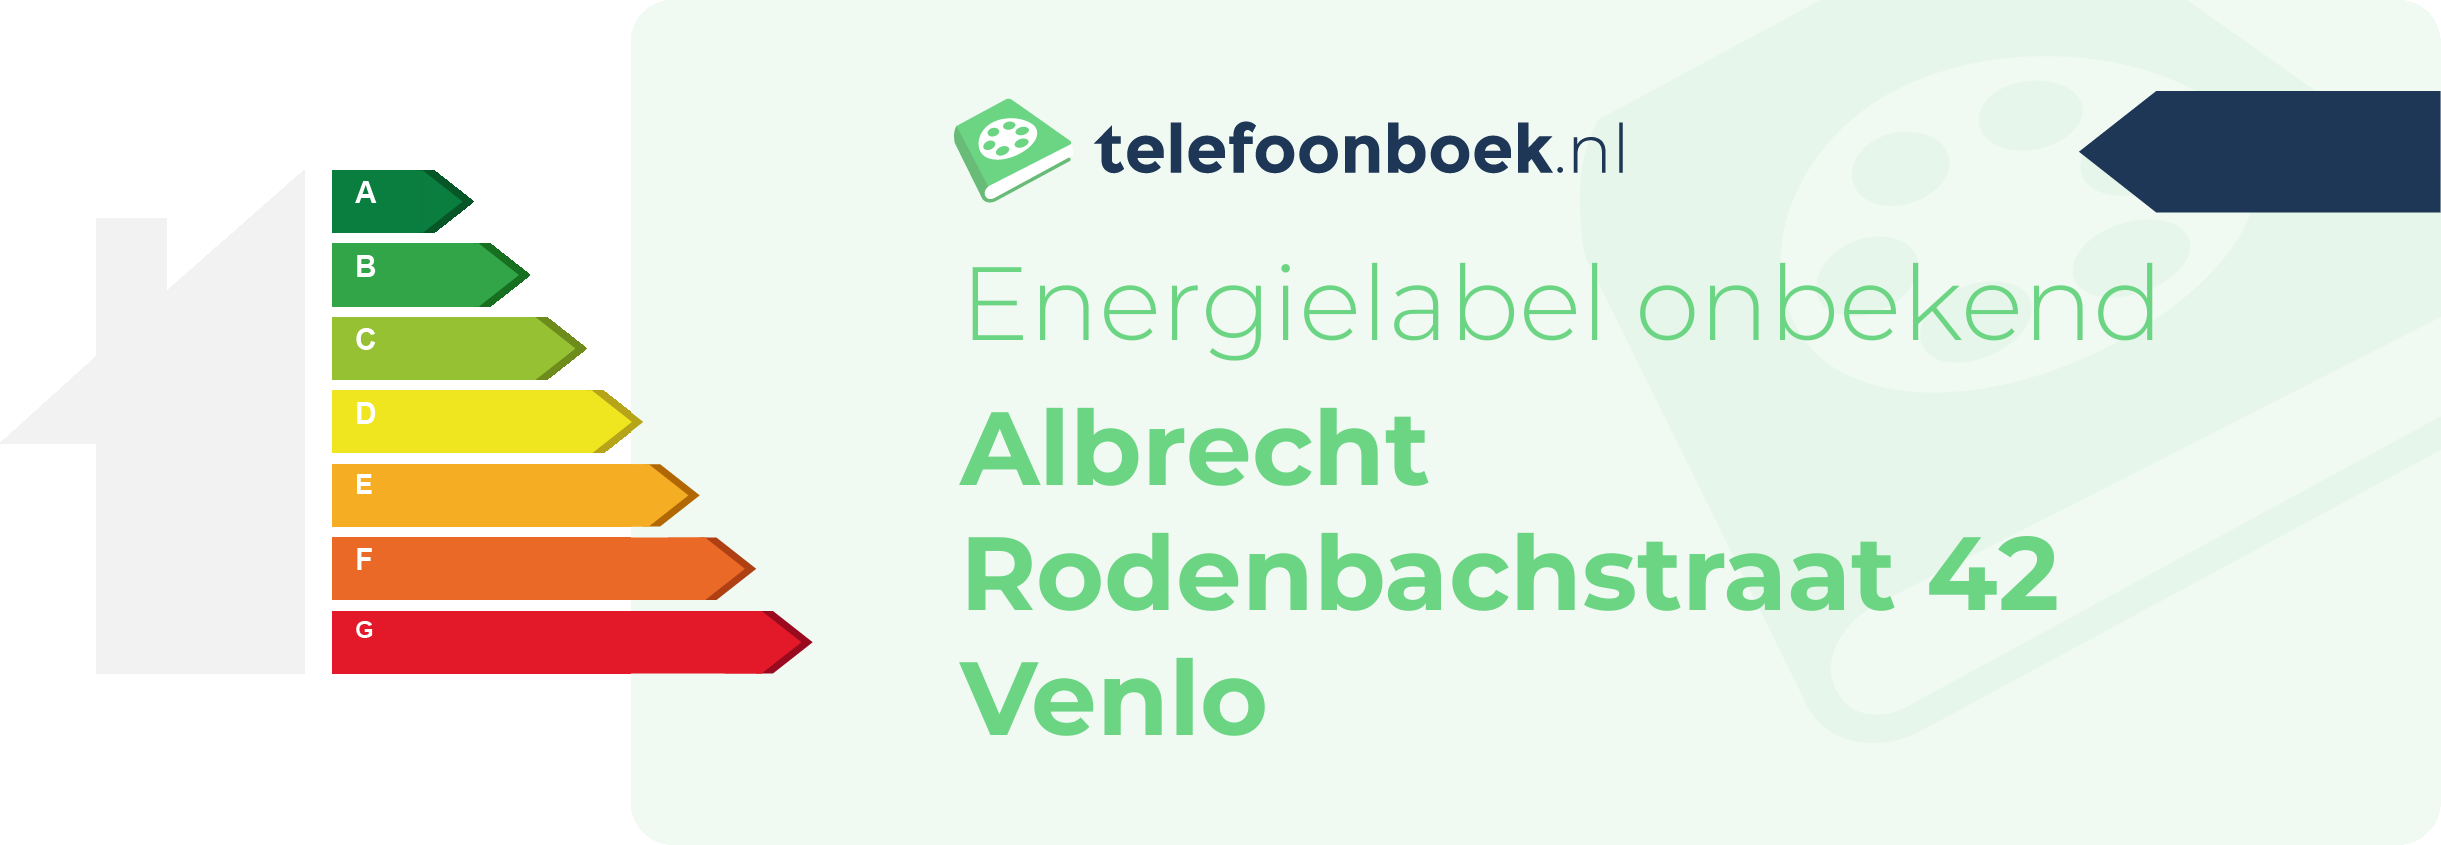 Energielabel Albrecht Rodenbachstraat 42 Venlo